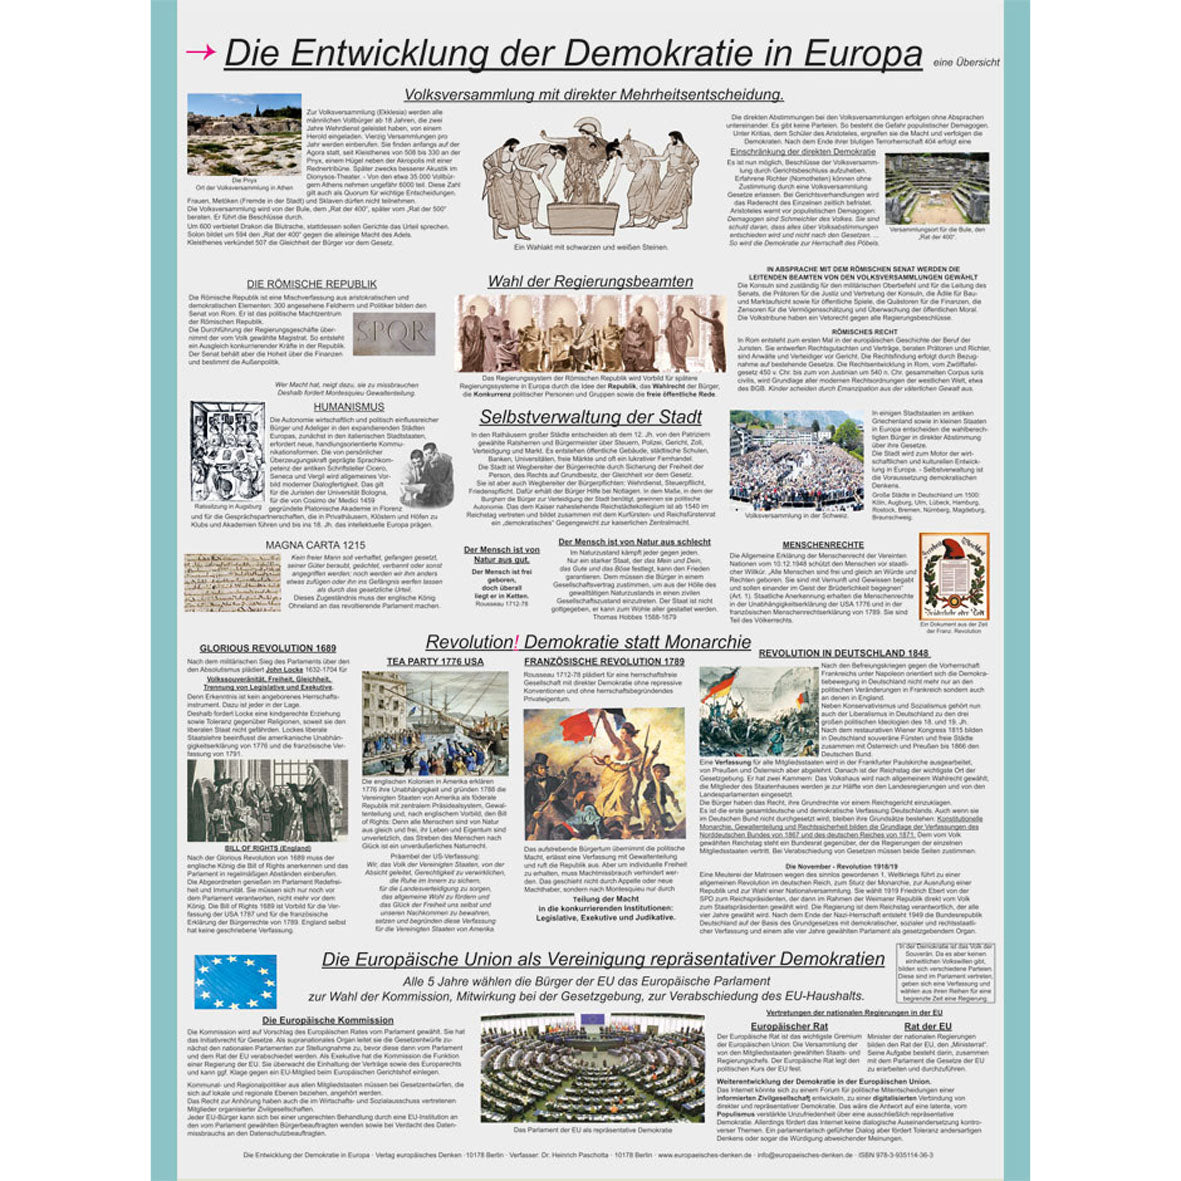 Poster "Die Entwicklung der Demokratie in Europa"